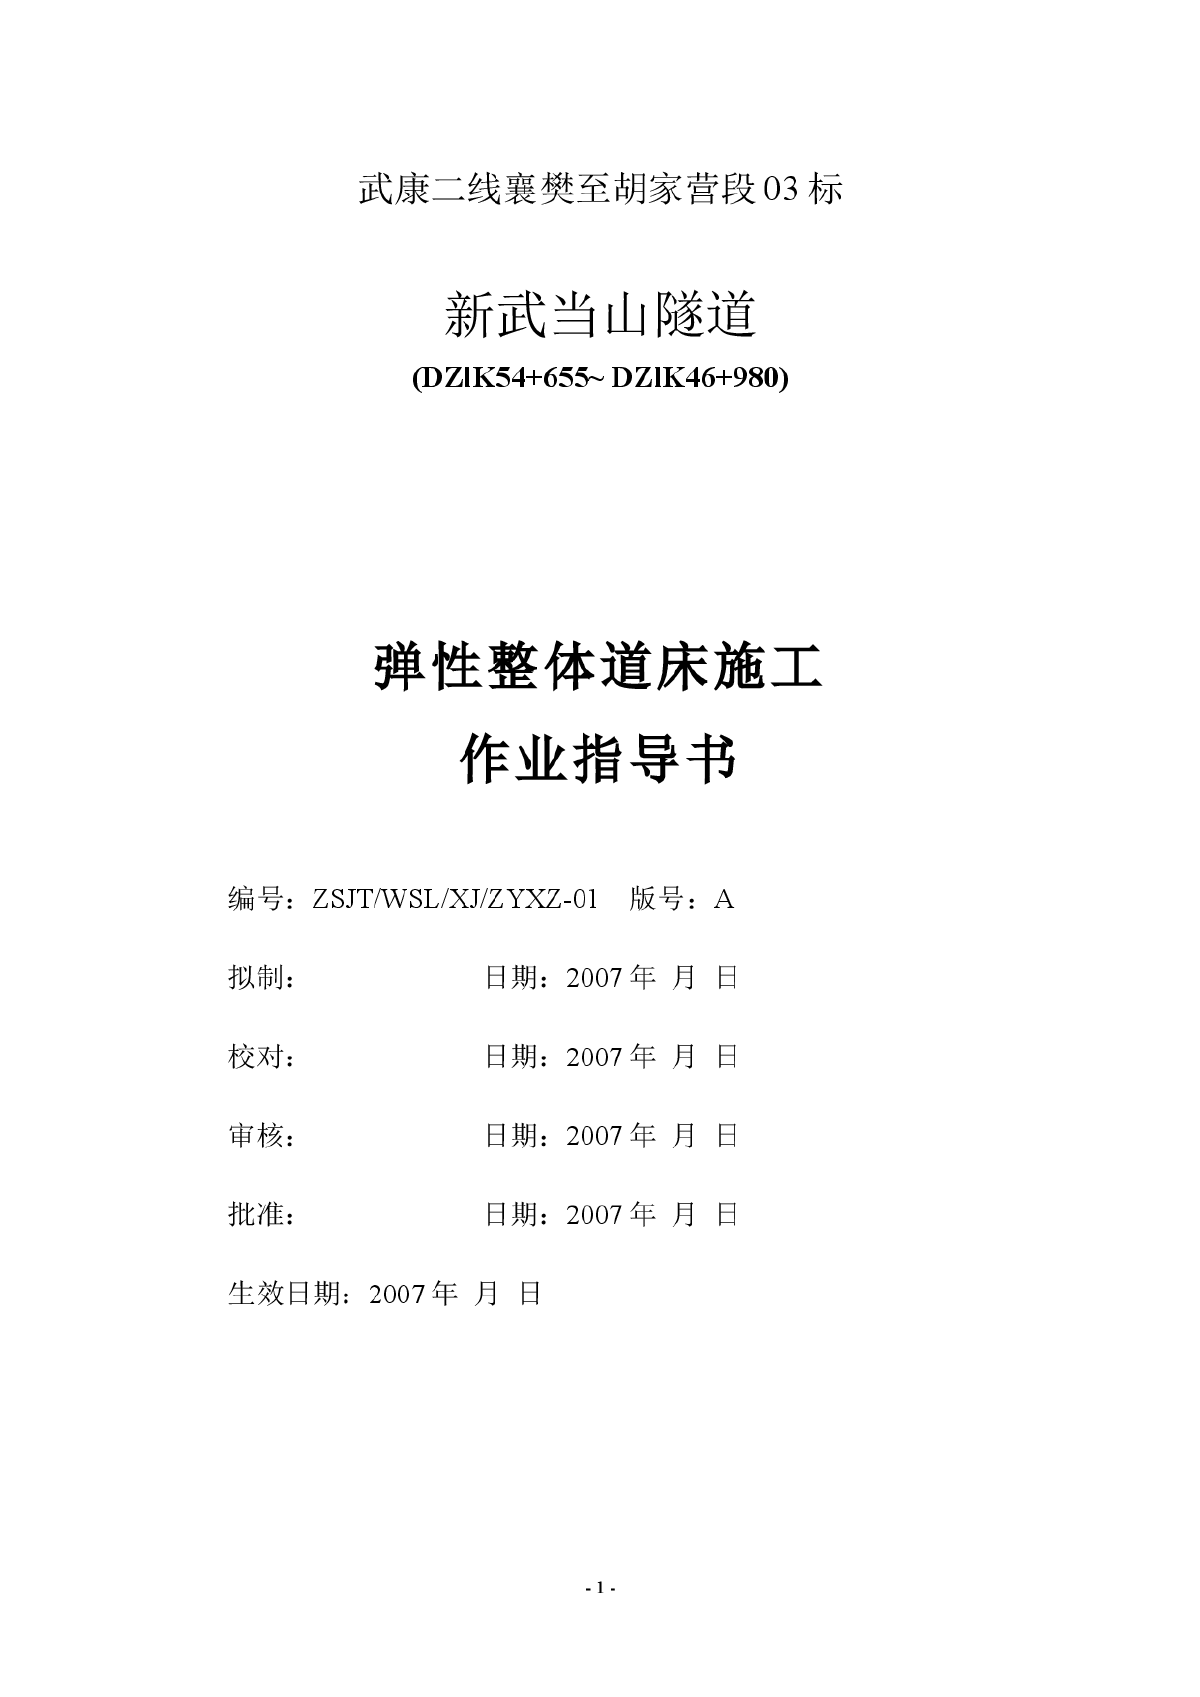 武当山隧道整体道床施工作业指导书-2